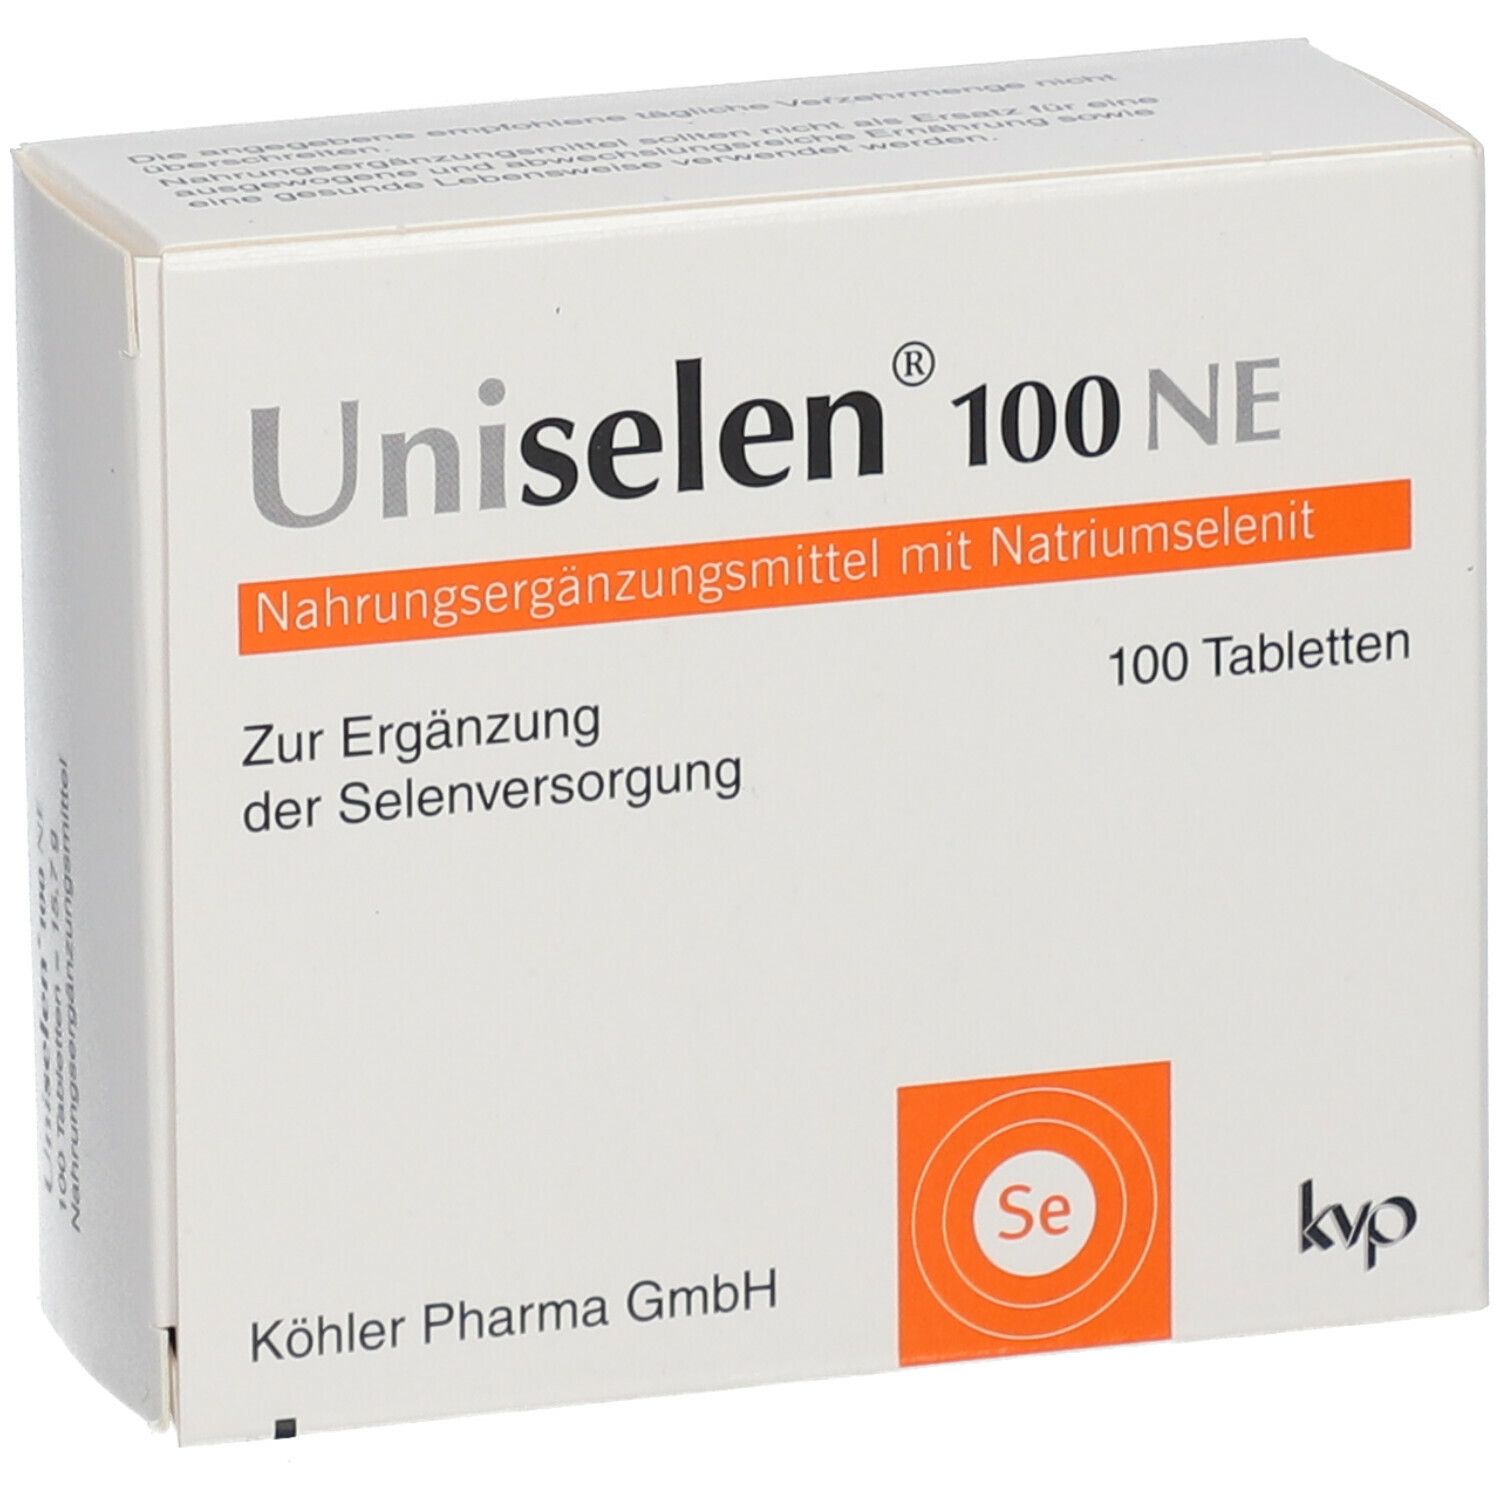 Uniselen® 100 NE Tabletten